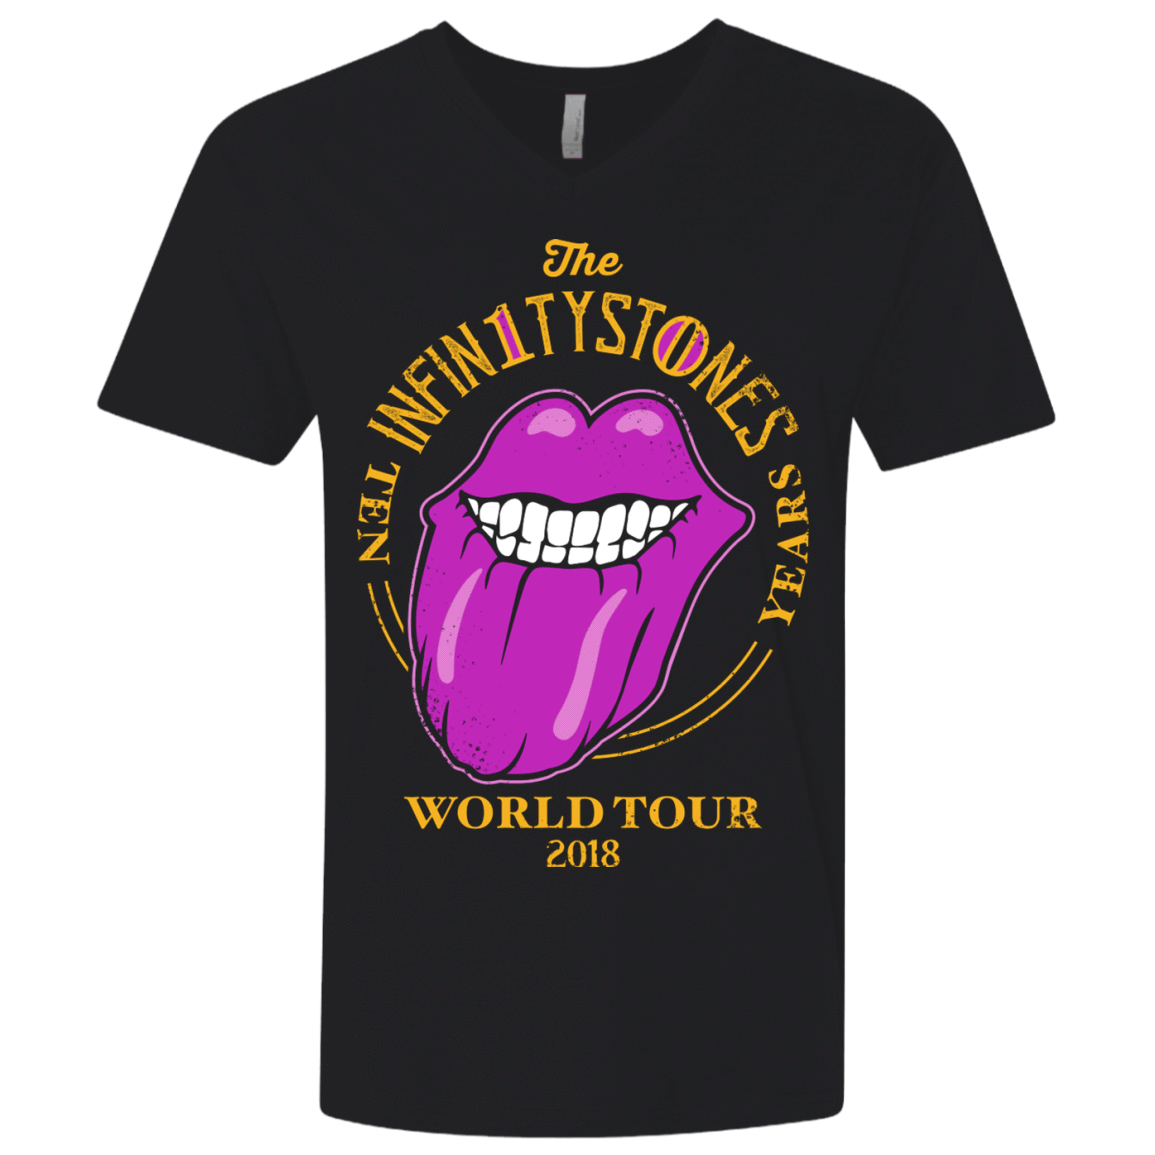 T-Shirts Black / X-Small Stones World Tour Men's Premium V-Neck